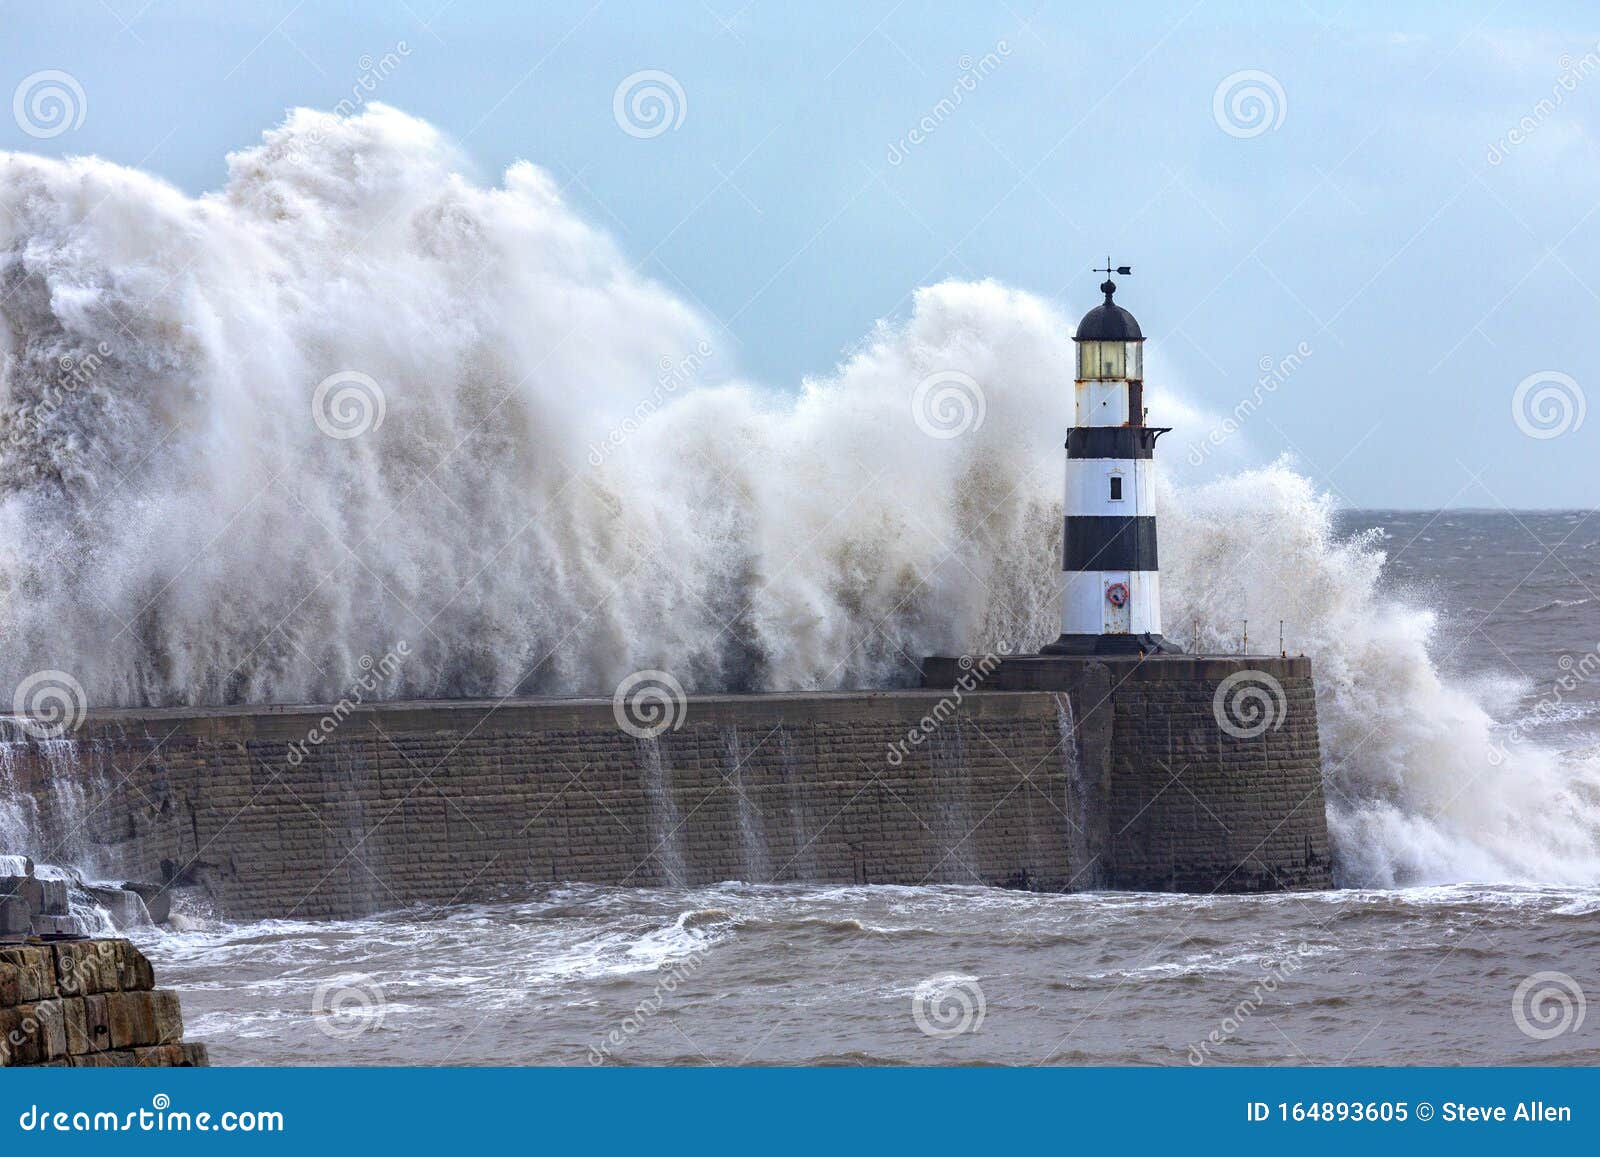 waves crashing over seaham lighthouse - england